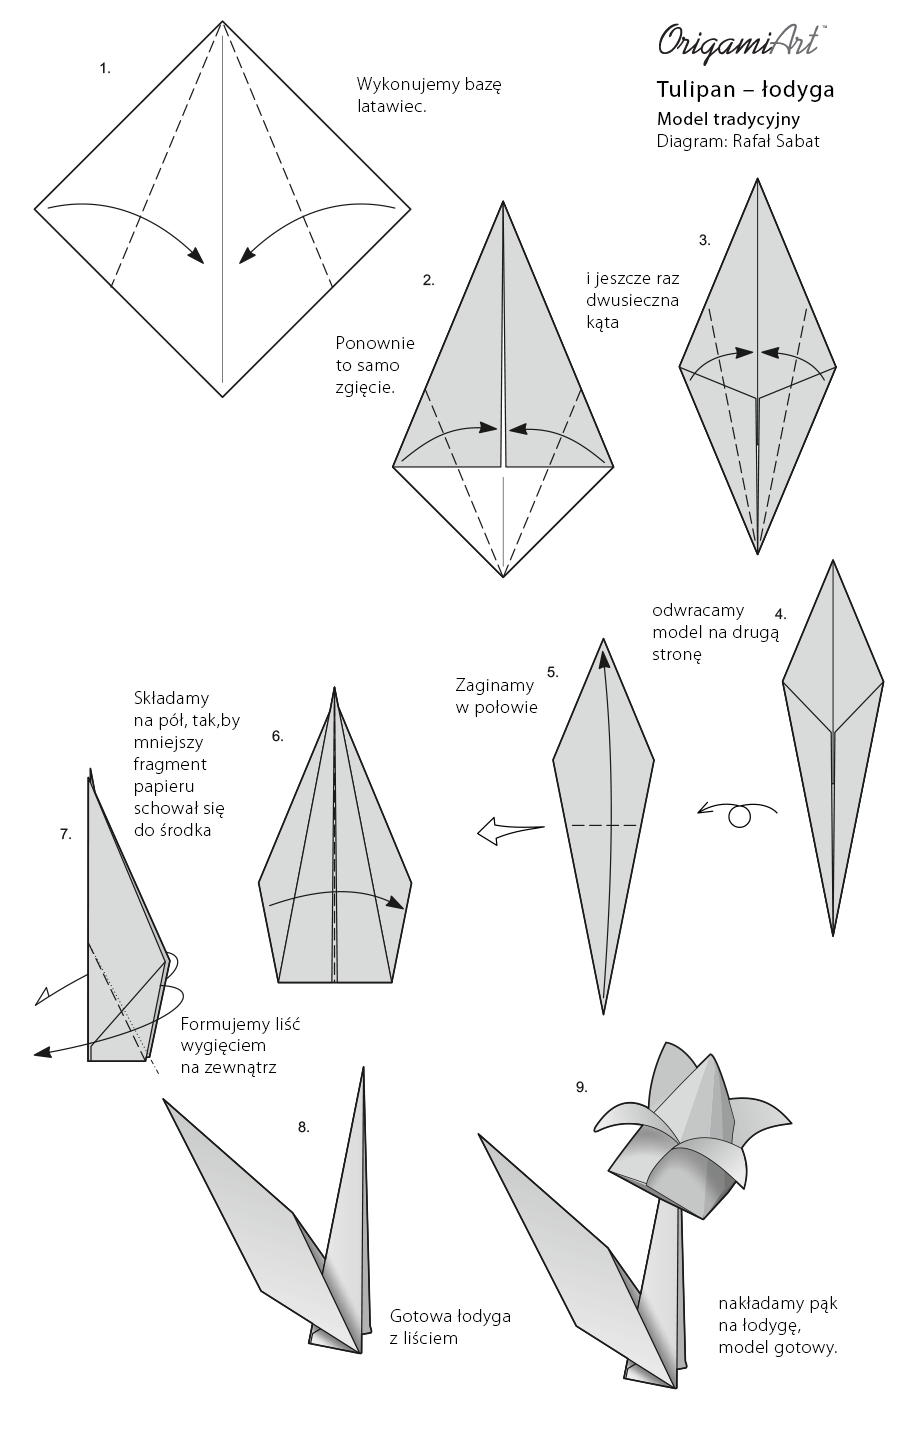 origami tulipan diagram